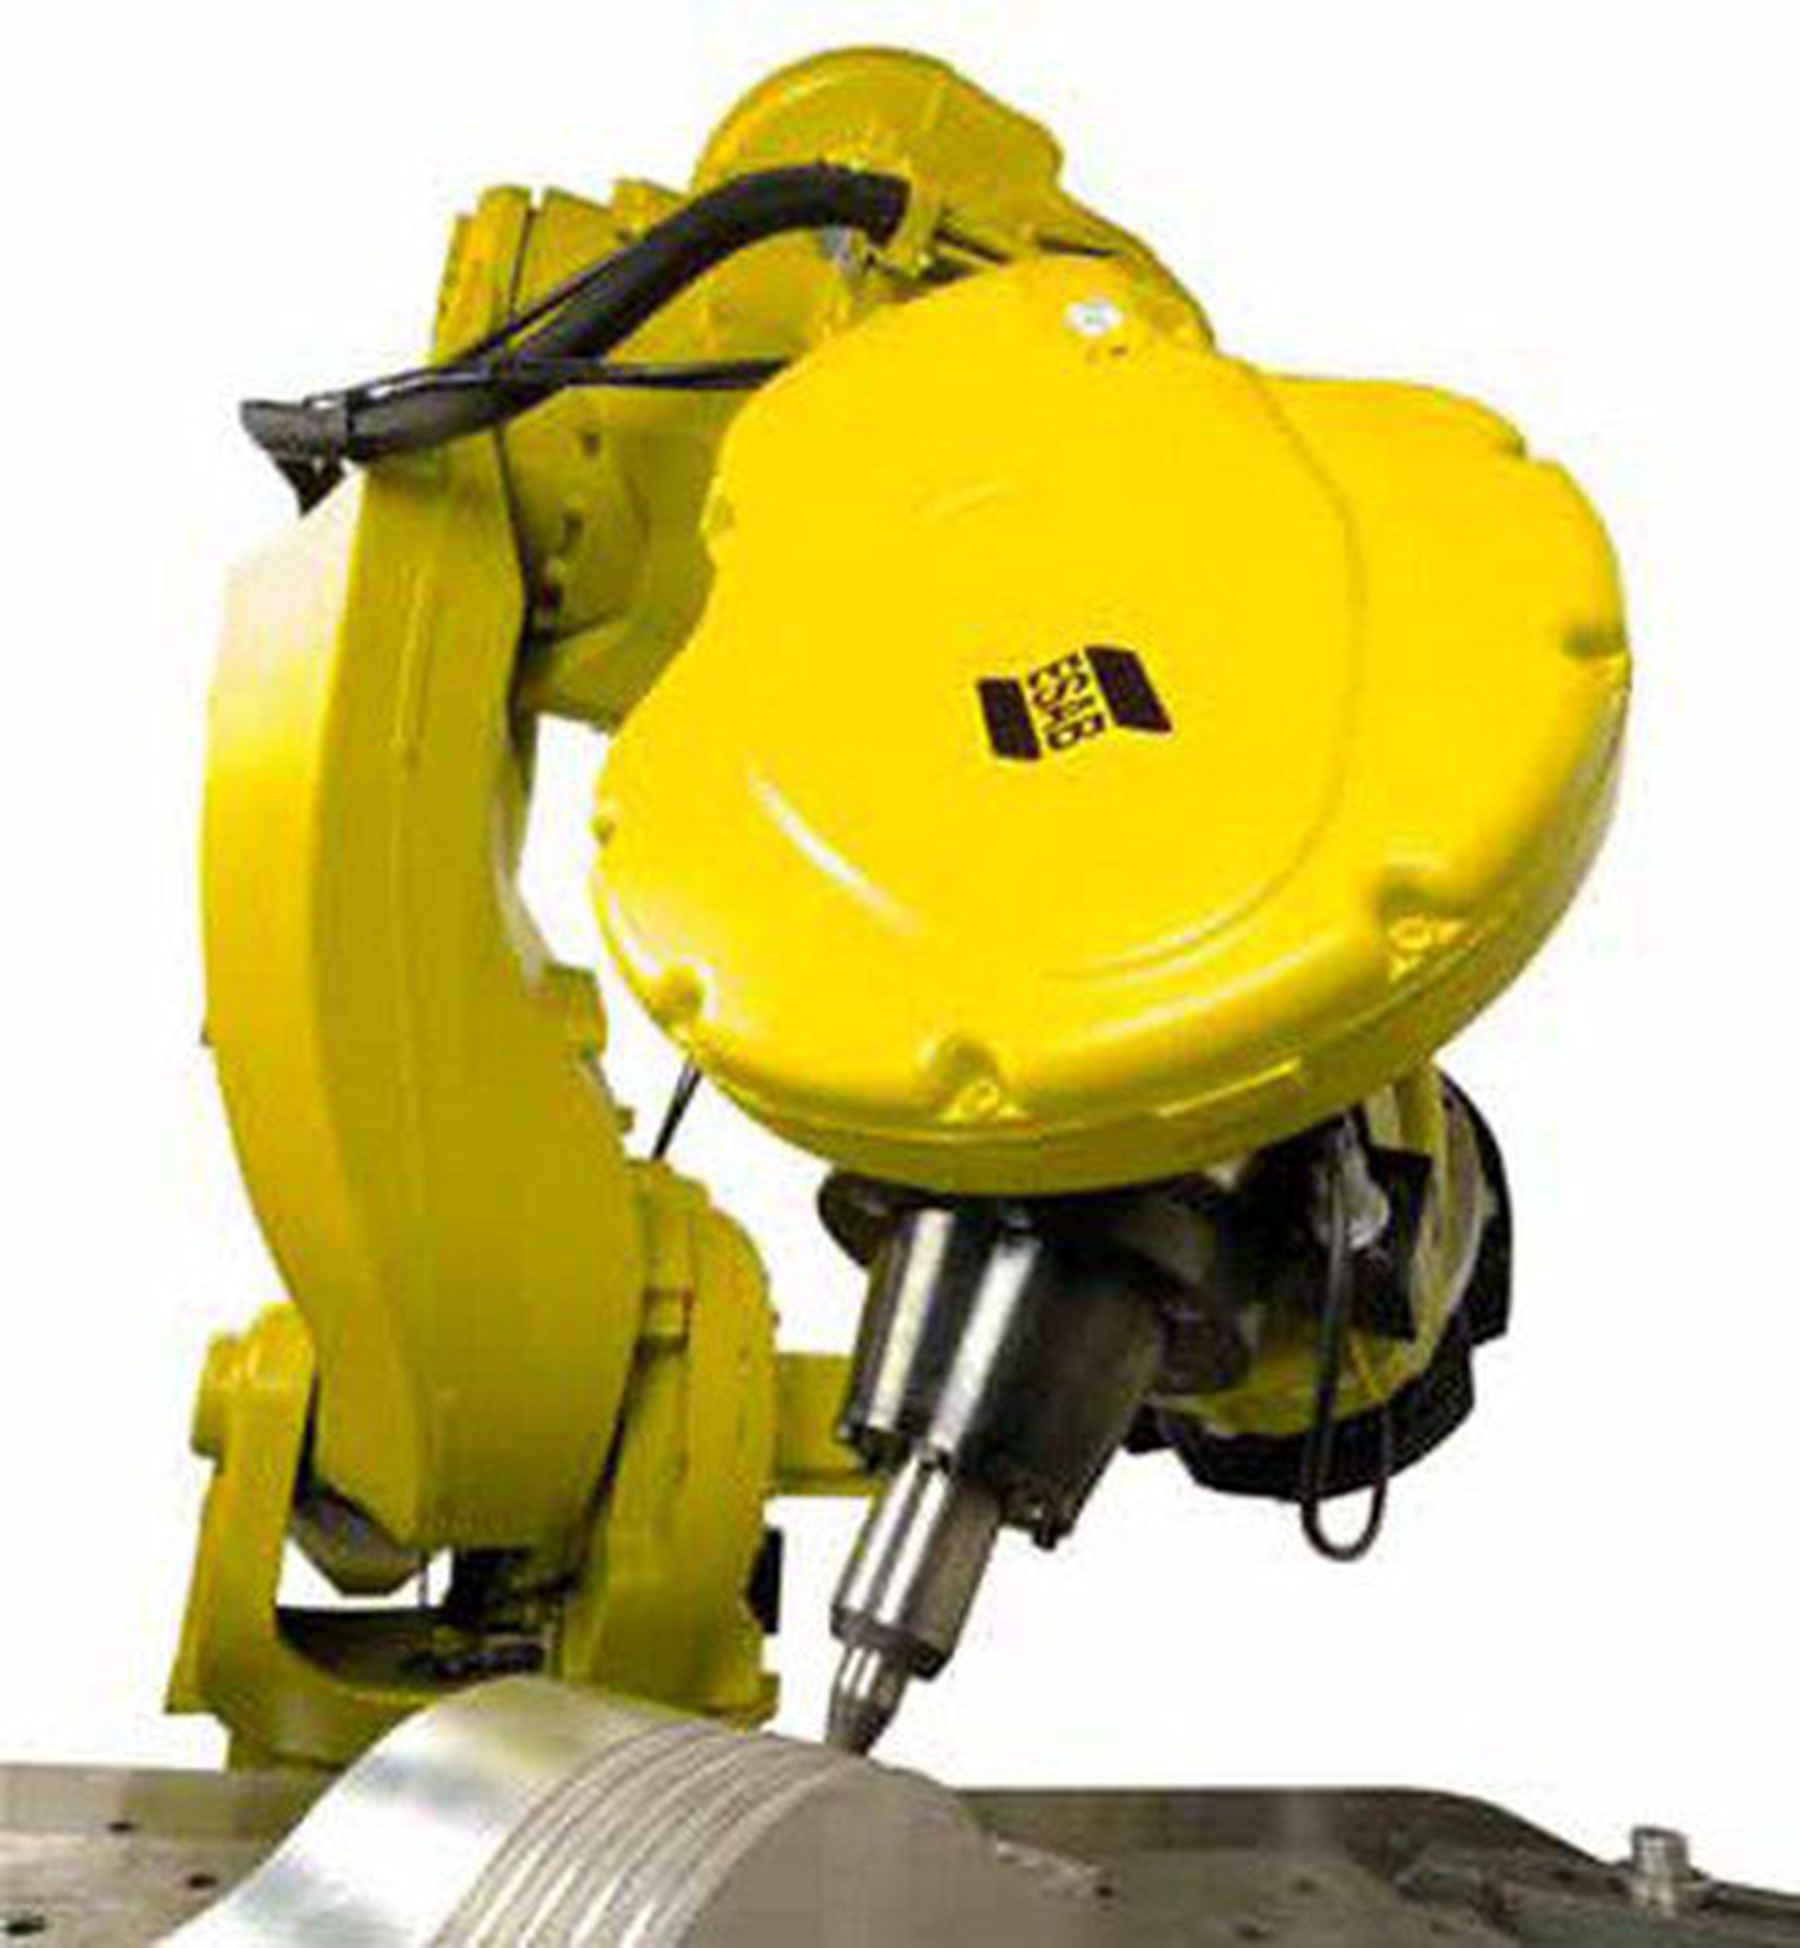 自动六轴机器人 自动垛码机器人 垛码搬运机器人 自动化定位系统